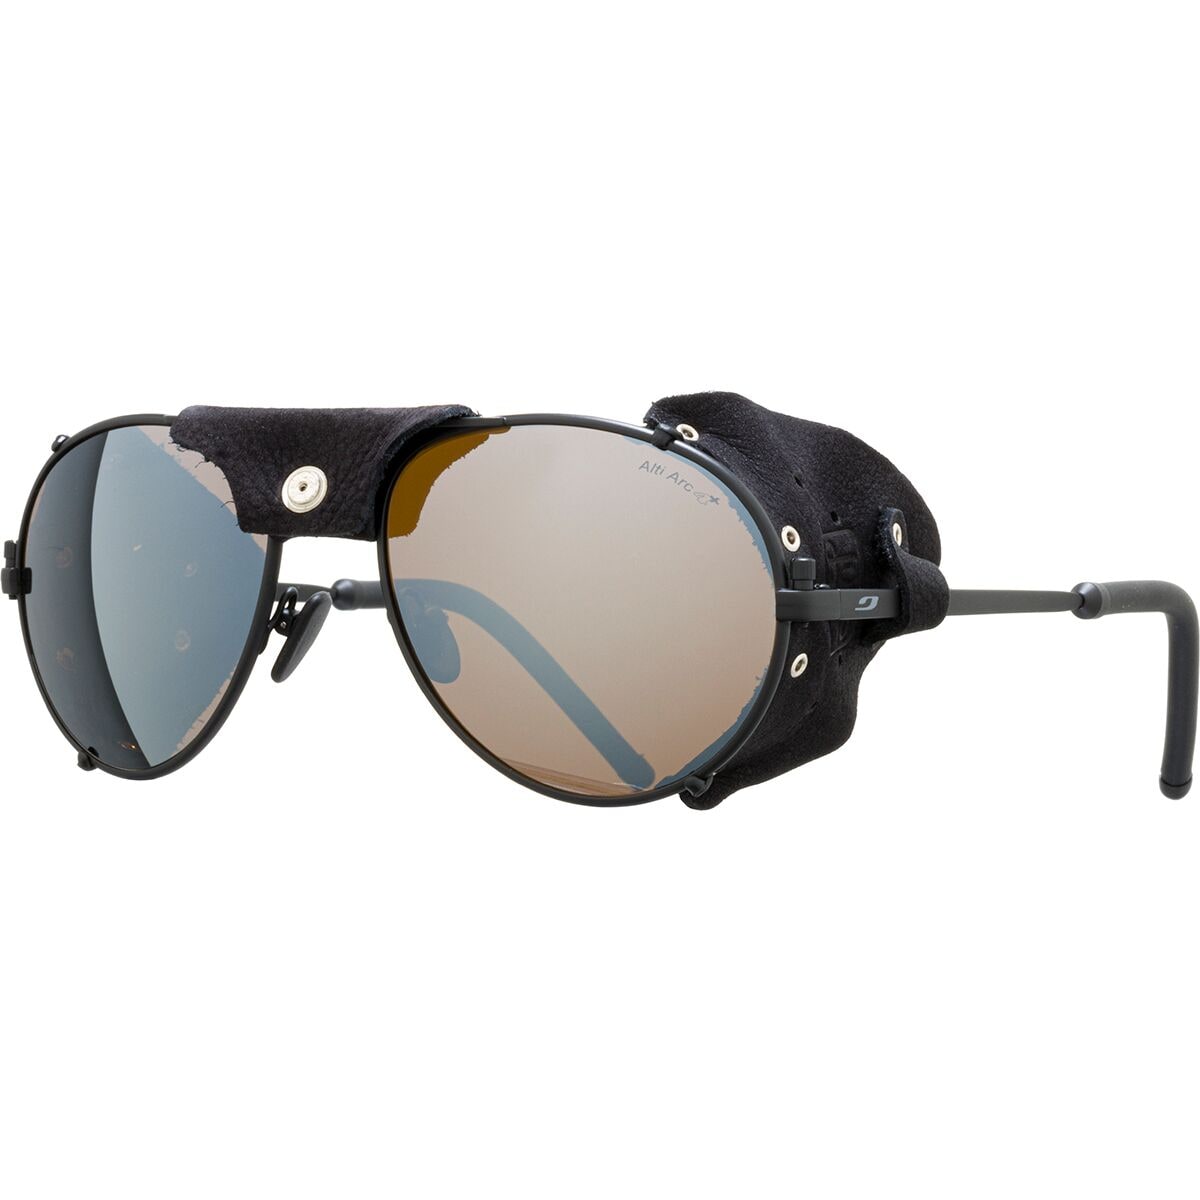 Стеклянные солнцезащитные очки cham alti arc 4 Julbo, цвет black/black